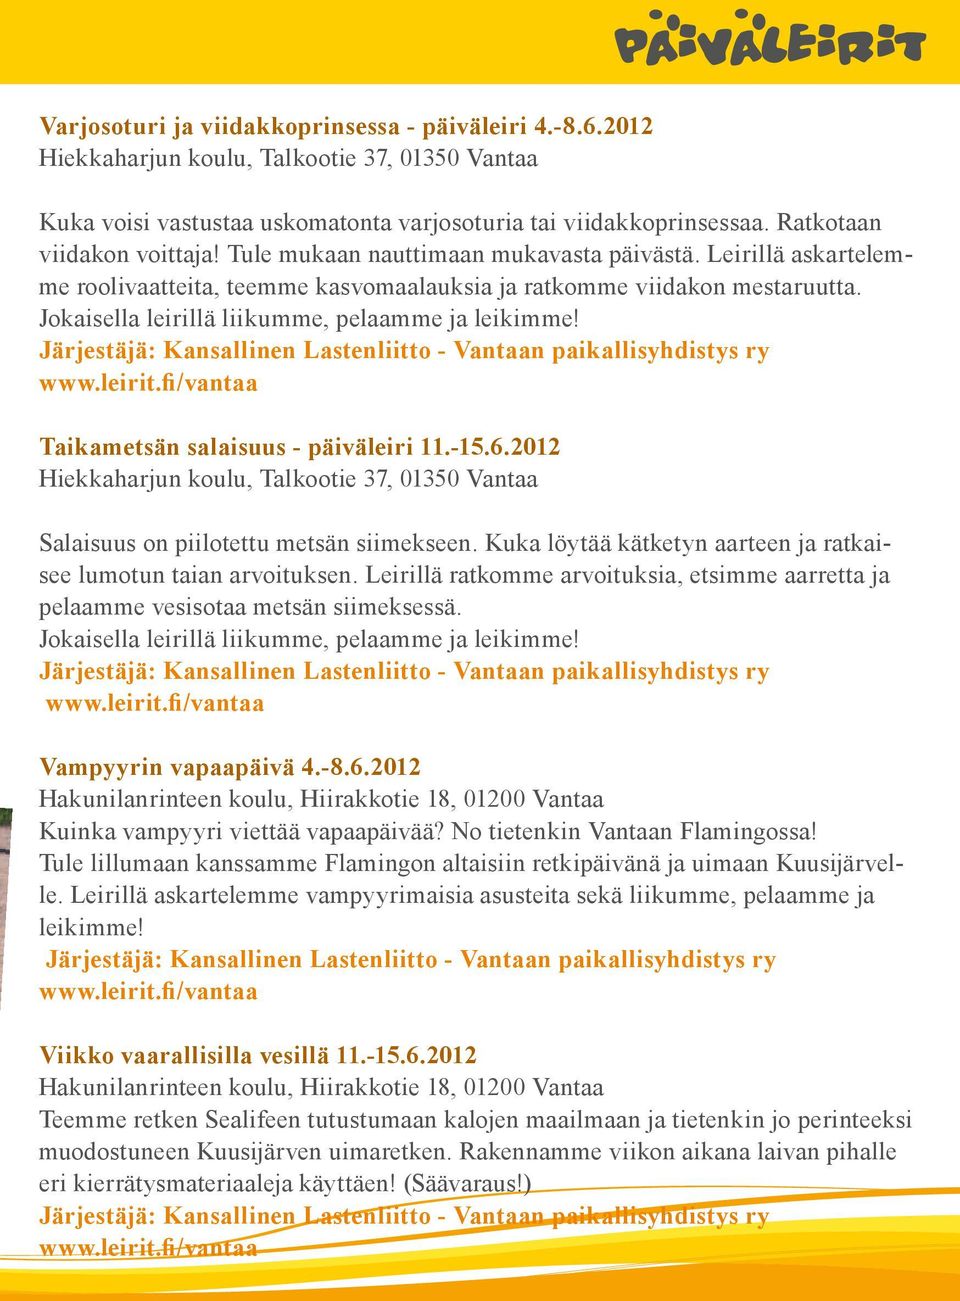 Jokaisella leirillä liikumme, pelaamme ja leikimme! Järjestäjä: Kansallinen Lastenliitto - Vantaan paikallisyhdistys ry www.leirit.fi/vantaa Taikametsän salaisuus - päiväleiri 11.-15.6.